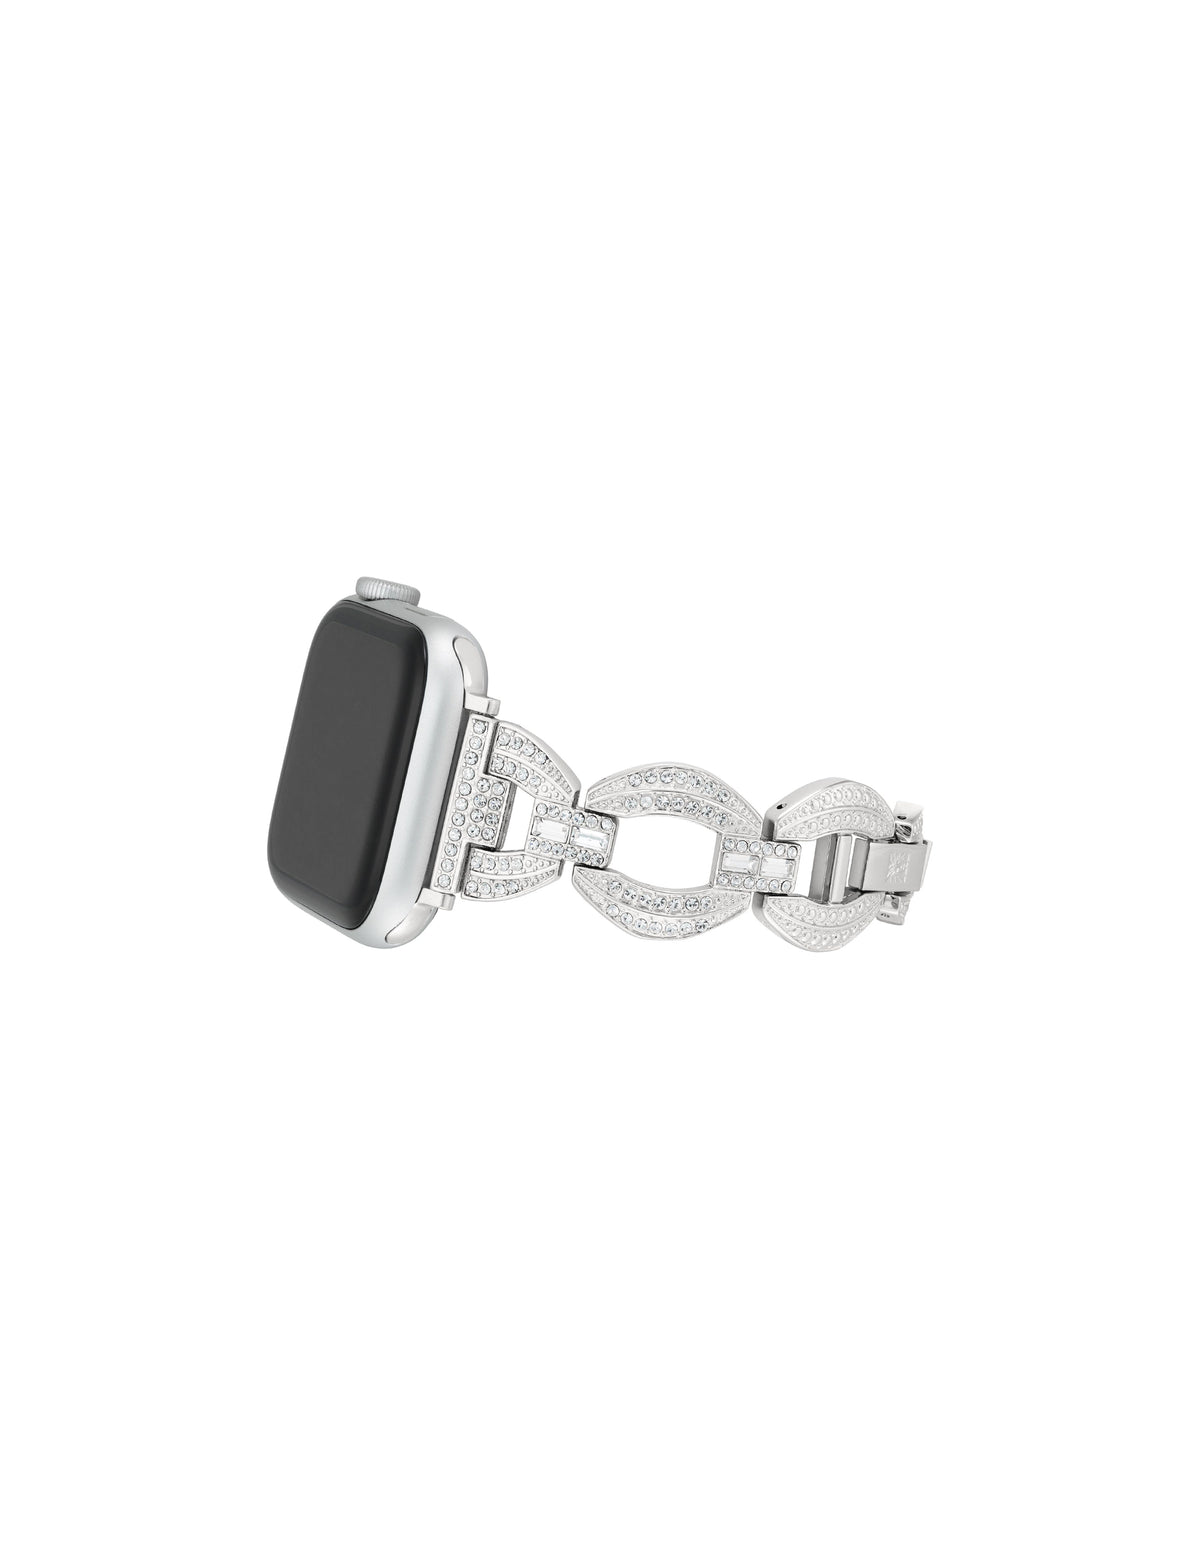 Anne Klein  Premium Crystal Round Link Bracelet  for Apple Watch®